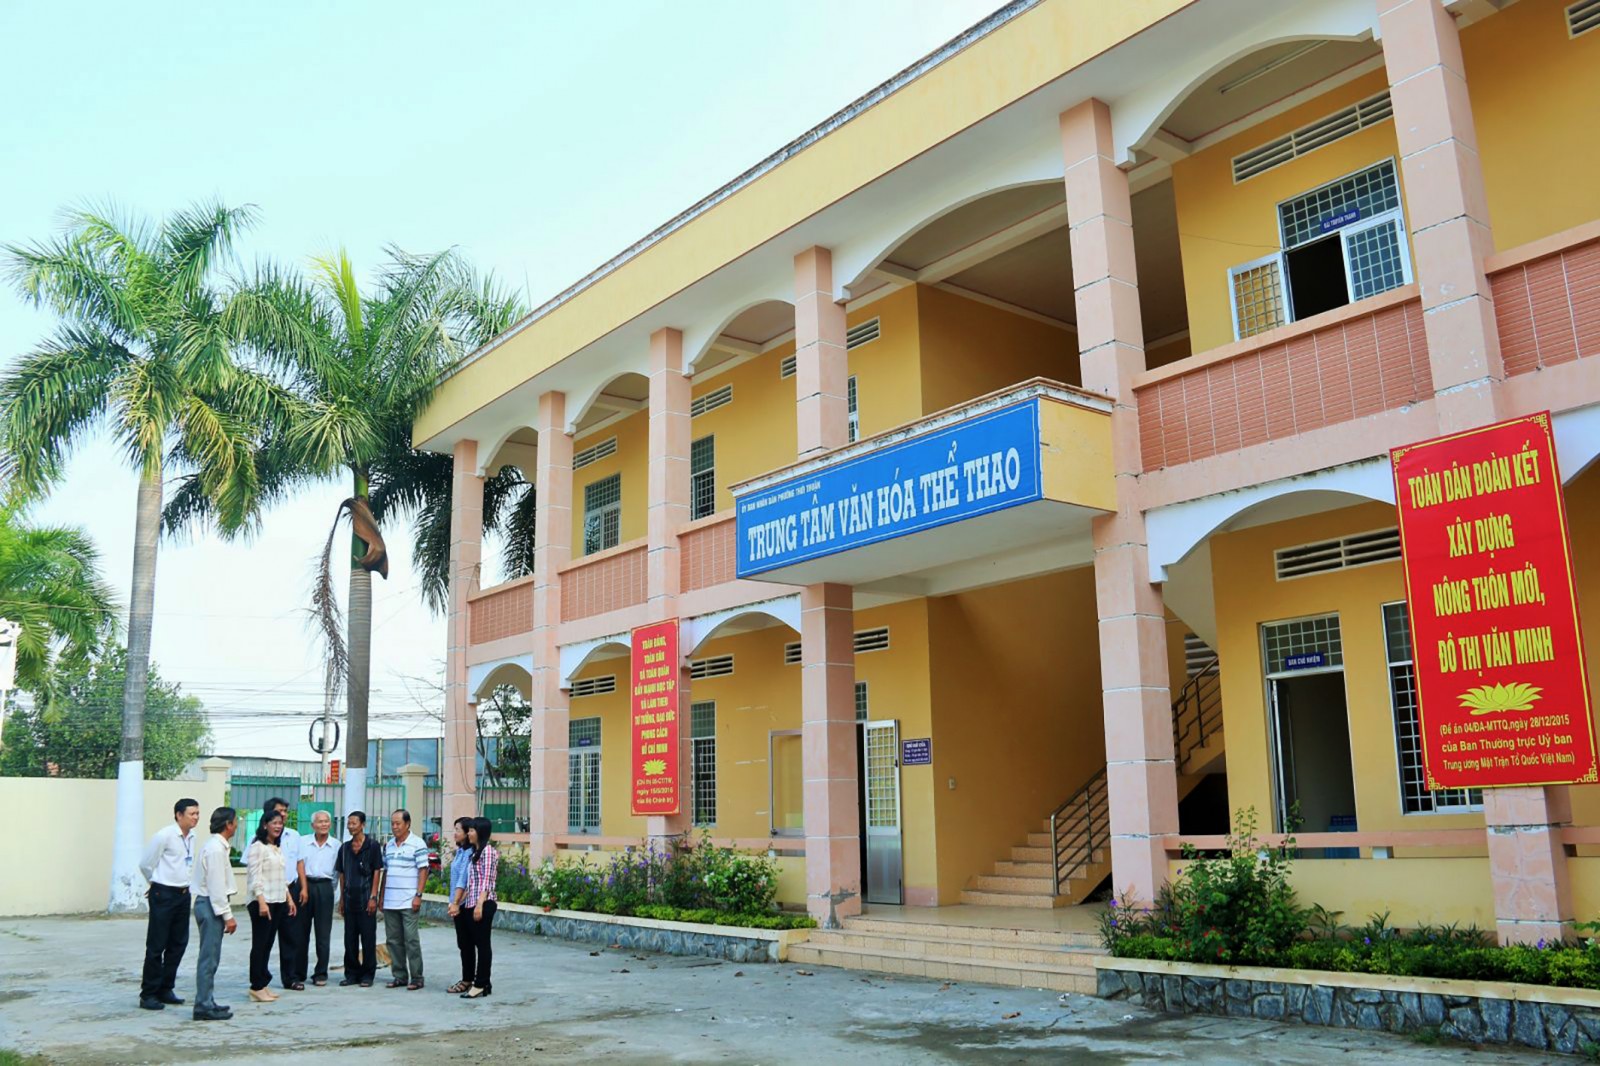 Trung tâm Văn hóa -Thể thao phường Thới Thuận khang trang, hoạt động hiệu quả. Ảnh: DUY KHÔI